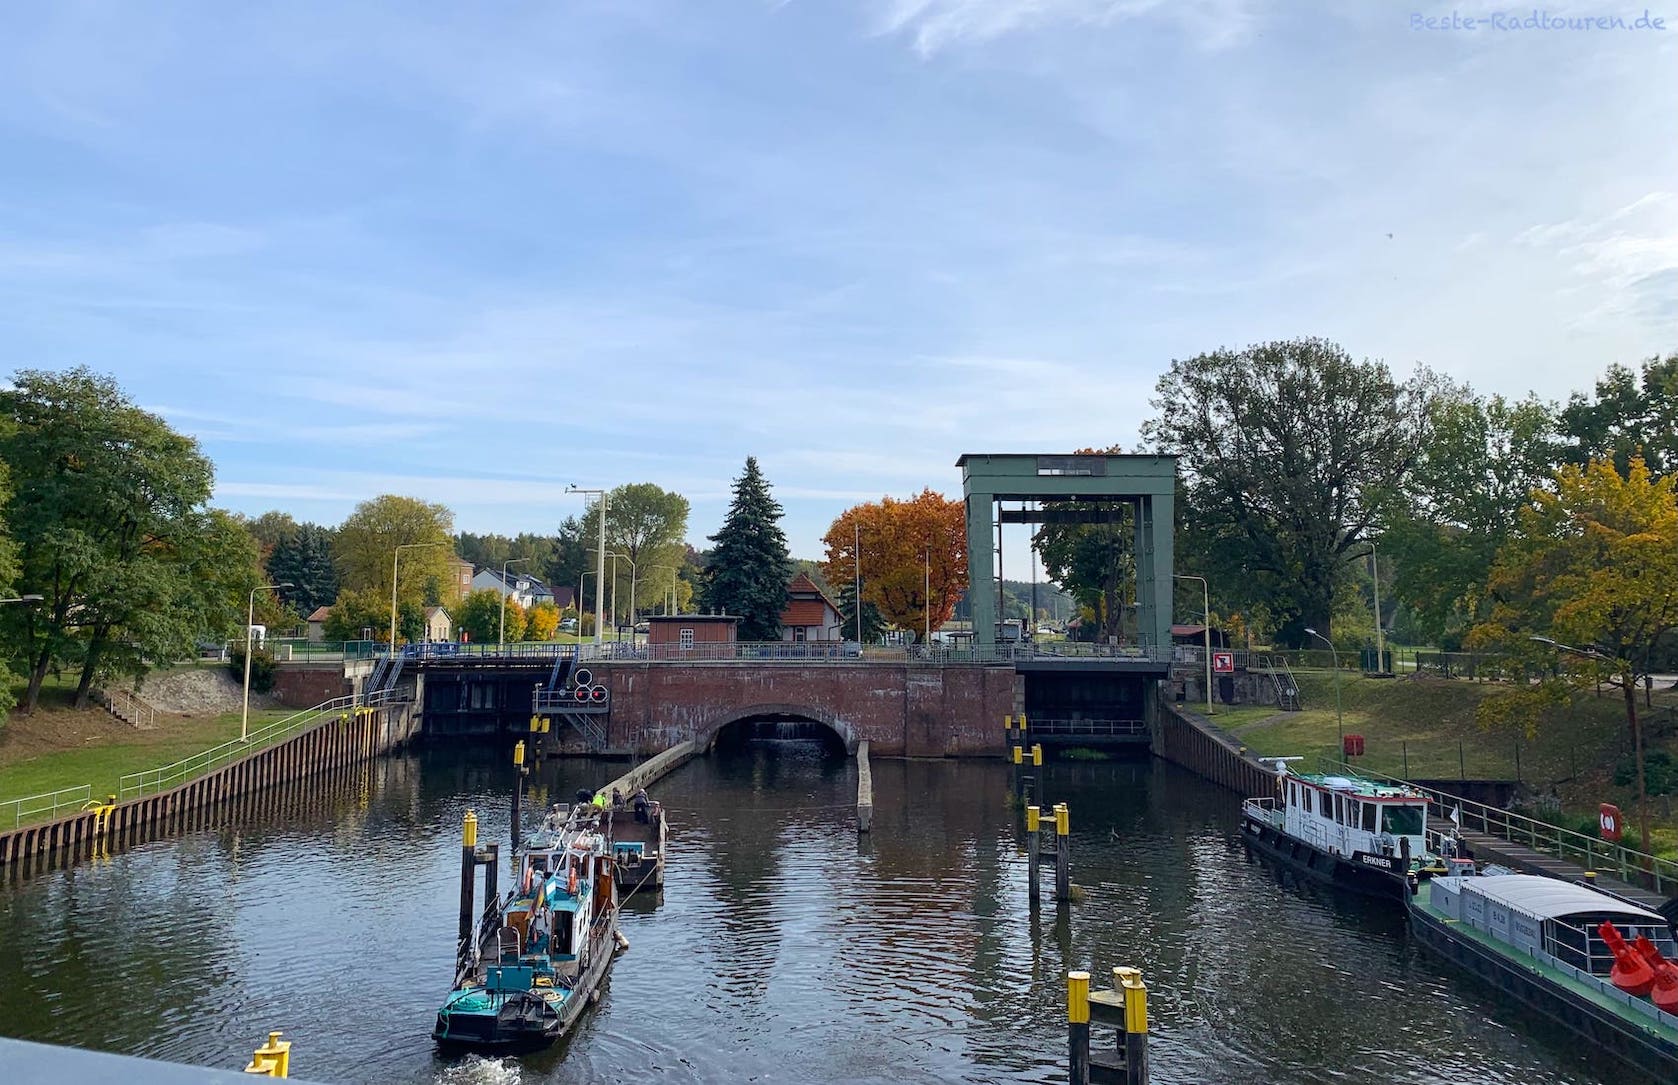 Wernsdorfer Schleuse am Oder-Spree-Kanal bei Wernsdorf, Foto von der Brücke